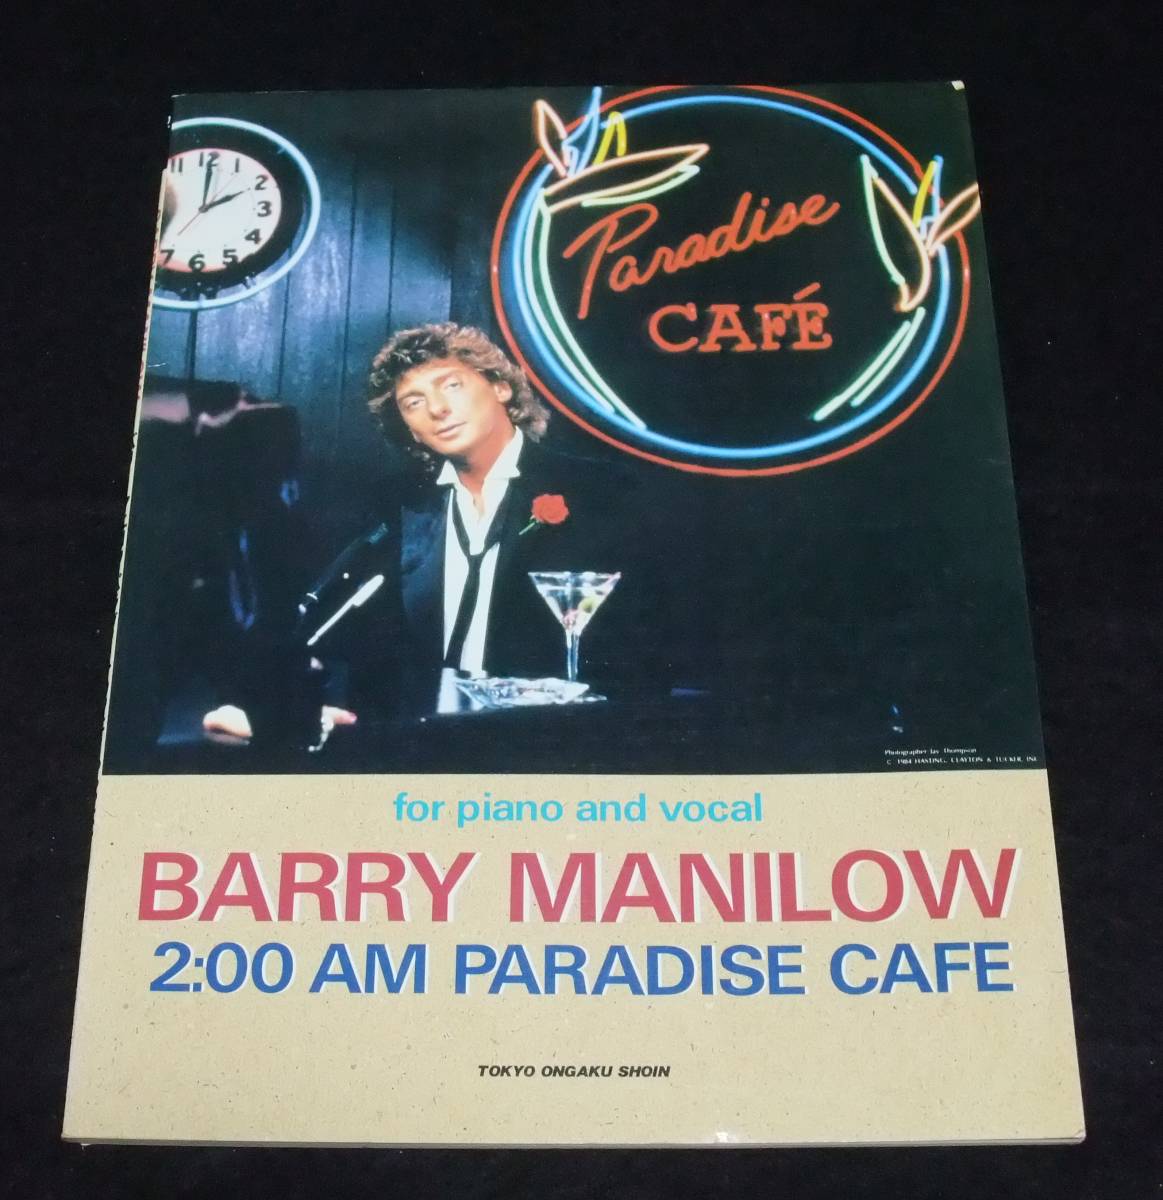 『BARRY MANILOW 2:00 AM PARADISE CAFE』　ピアノ バリー・マニロウ・パラダイス・カフェ 2:00AM